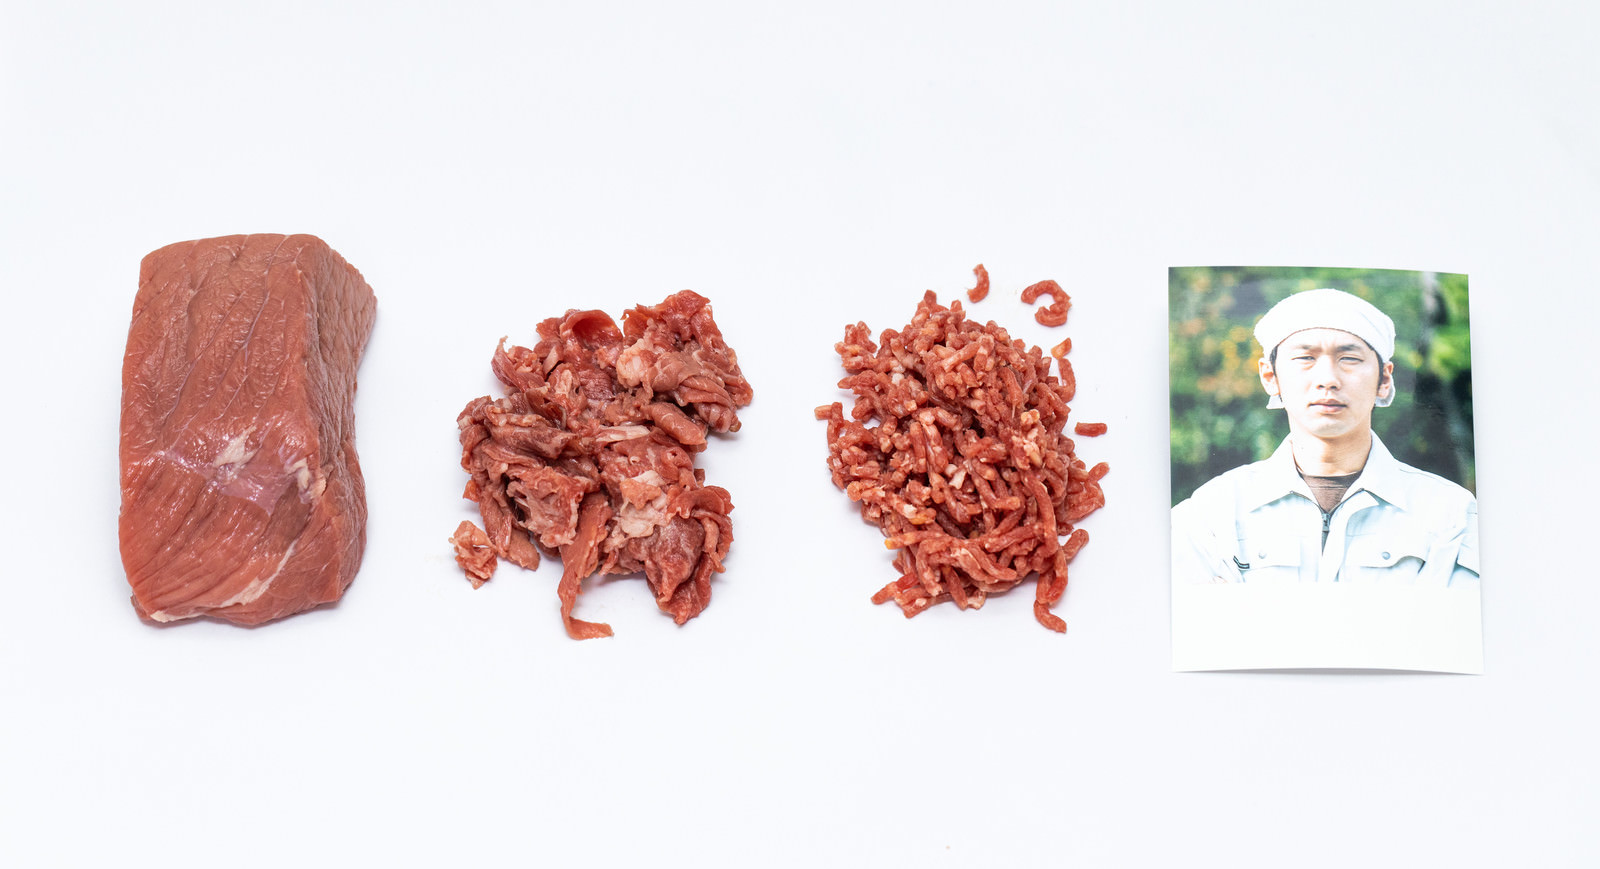 ブロック肉、細切れ肉、挽肉（ミンチ）、生産者のフリー素材